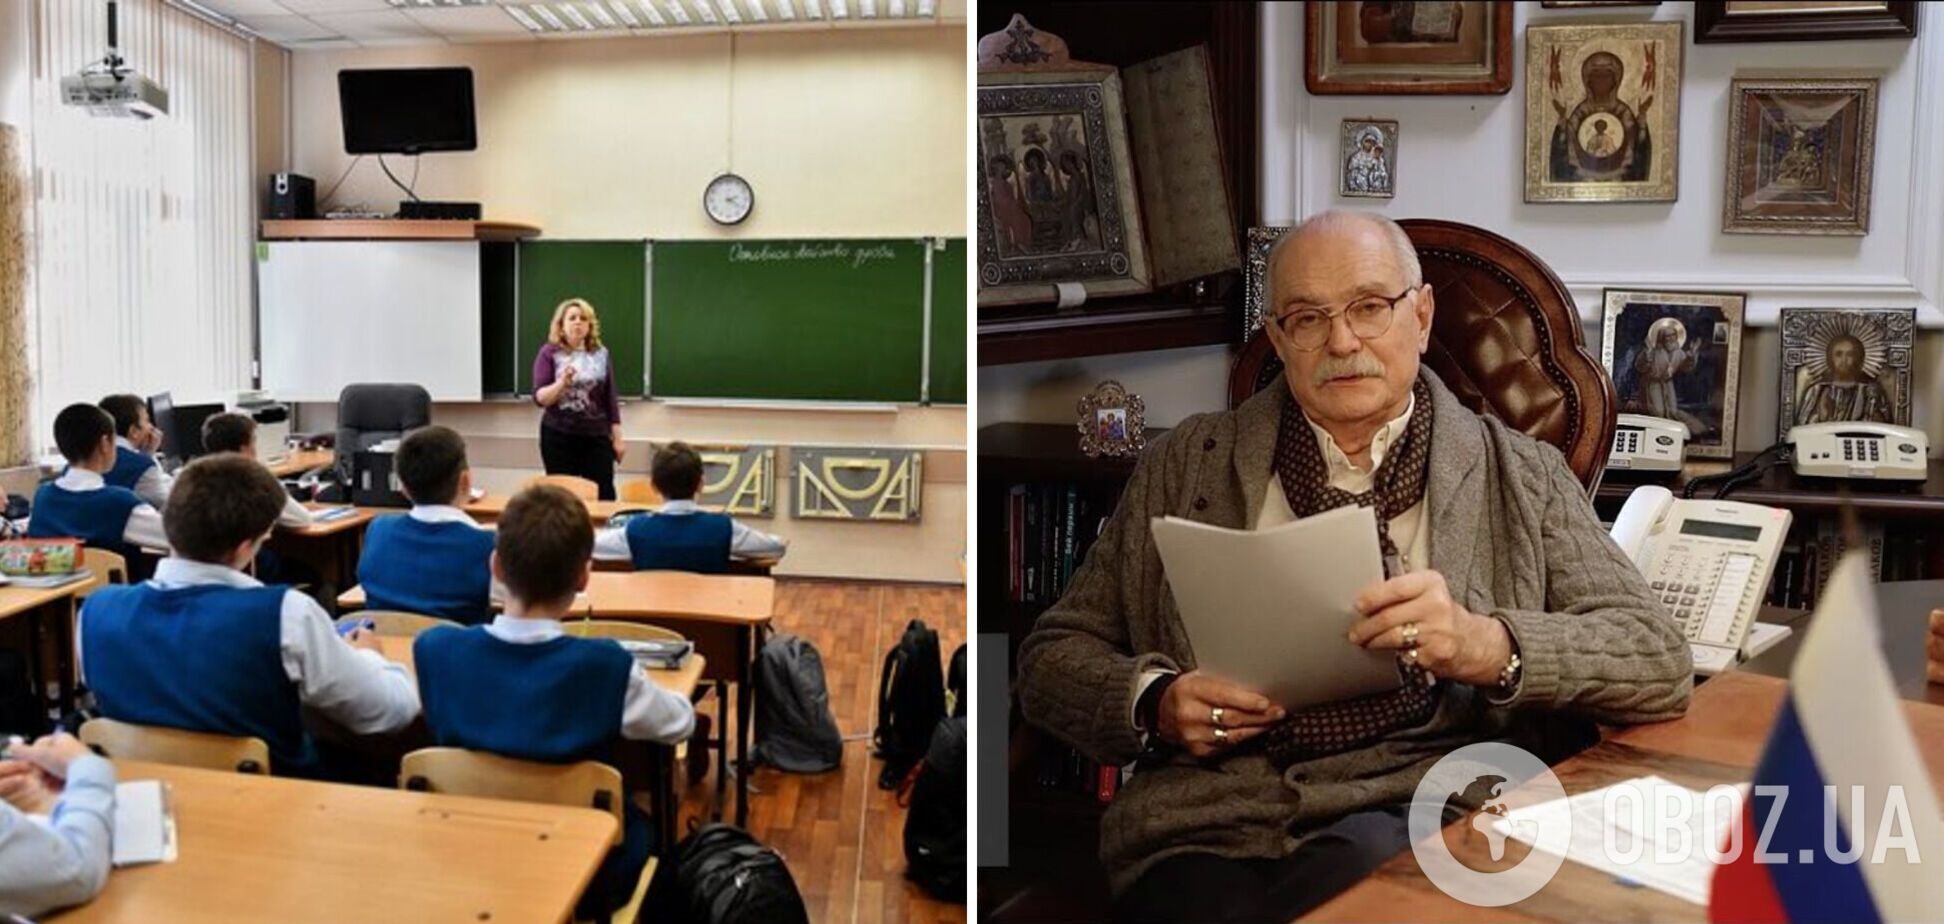 Учительница из российского Ульяновска задала детям на лето смотреть путиниста Михалкова, чтобы 'понимать правду'